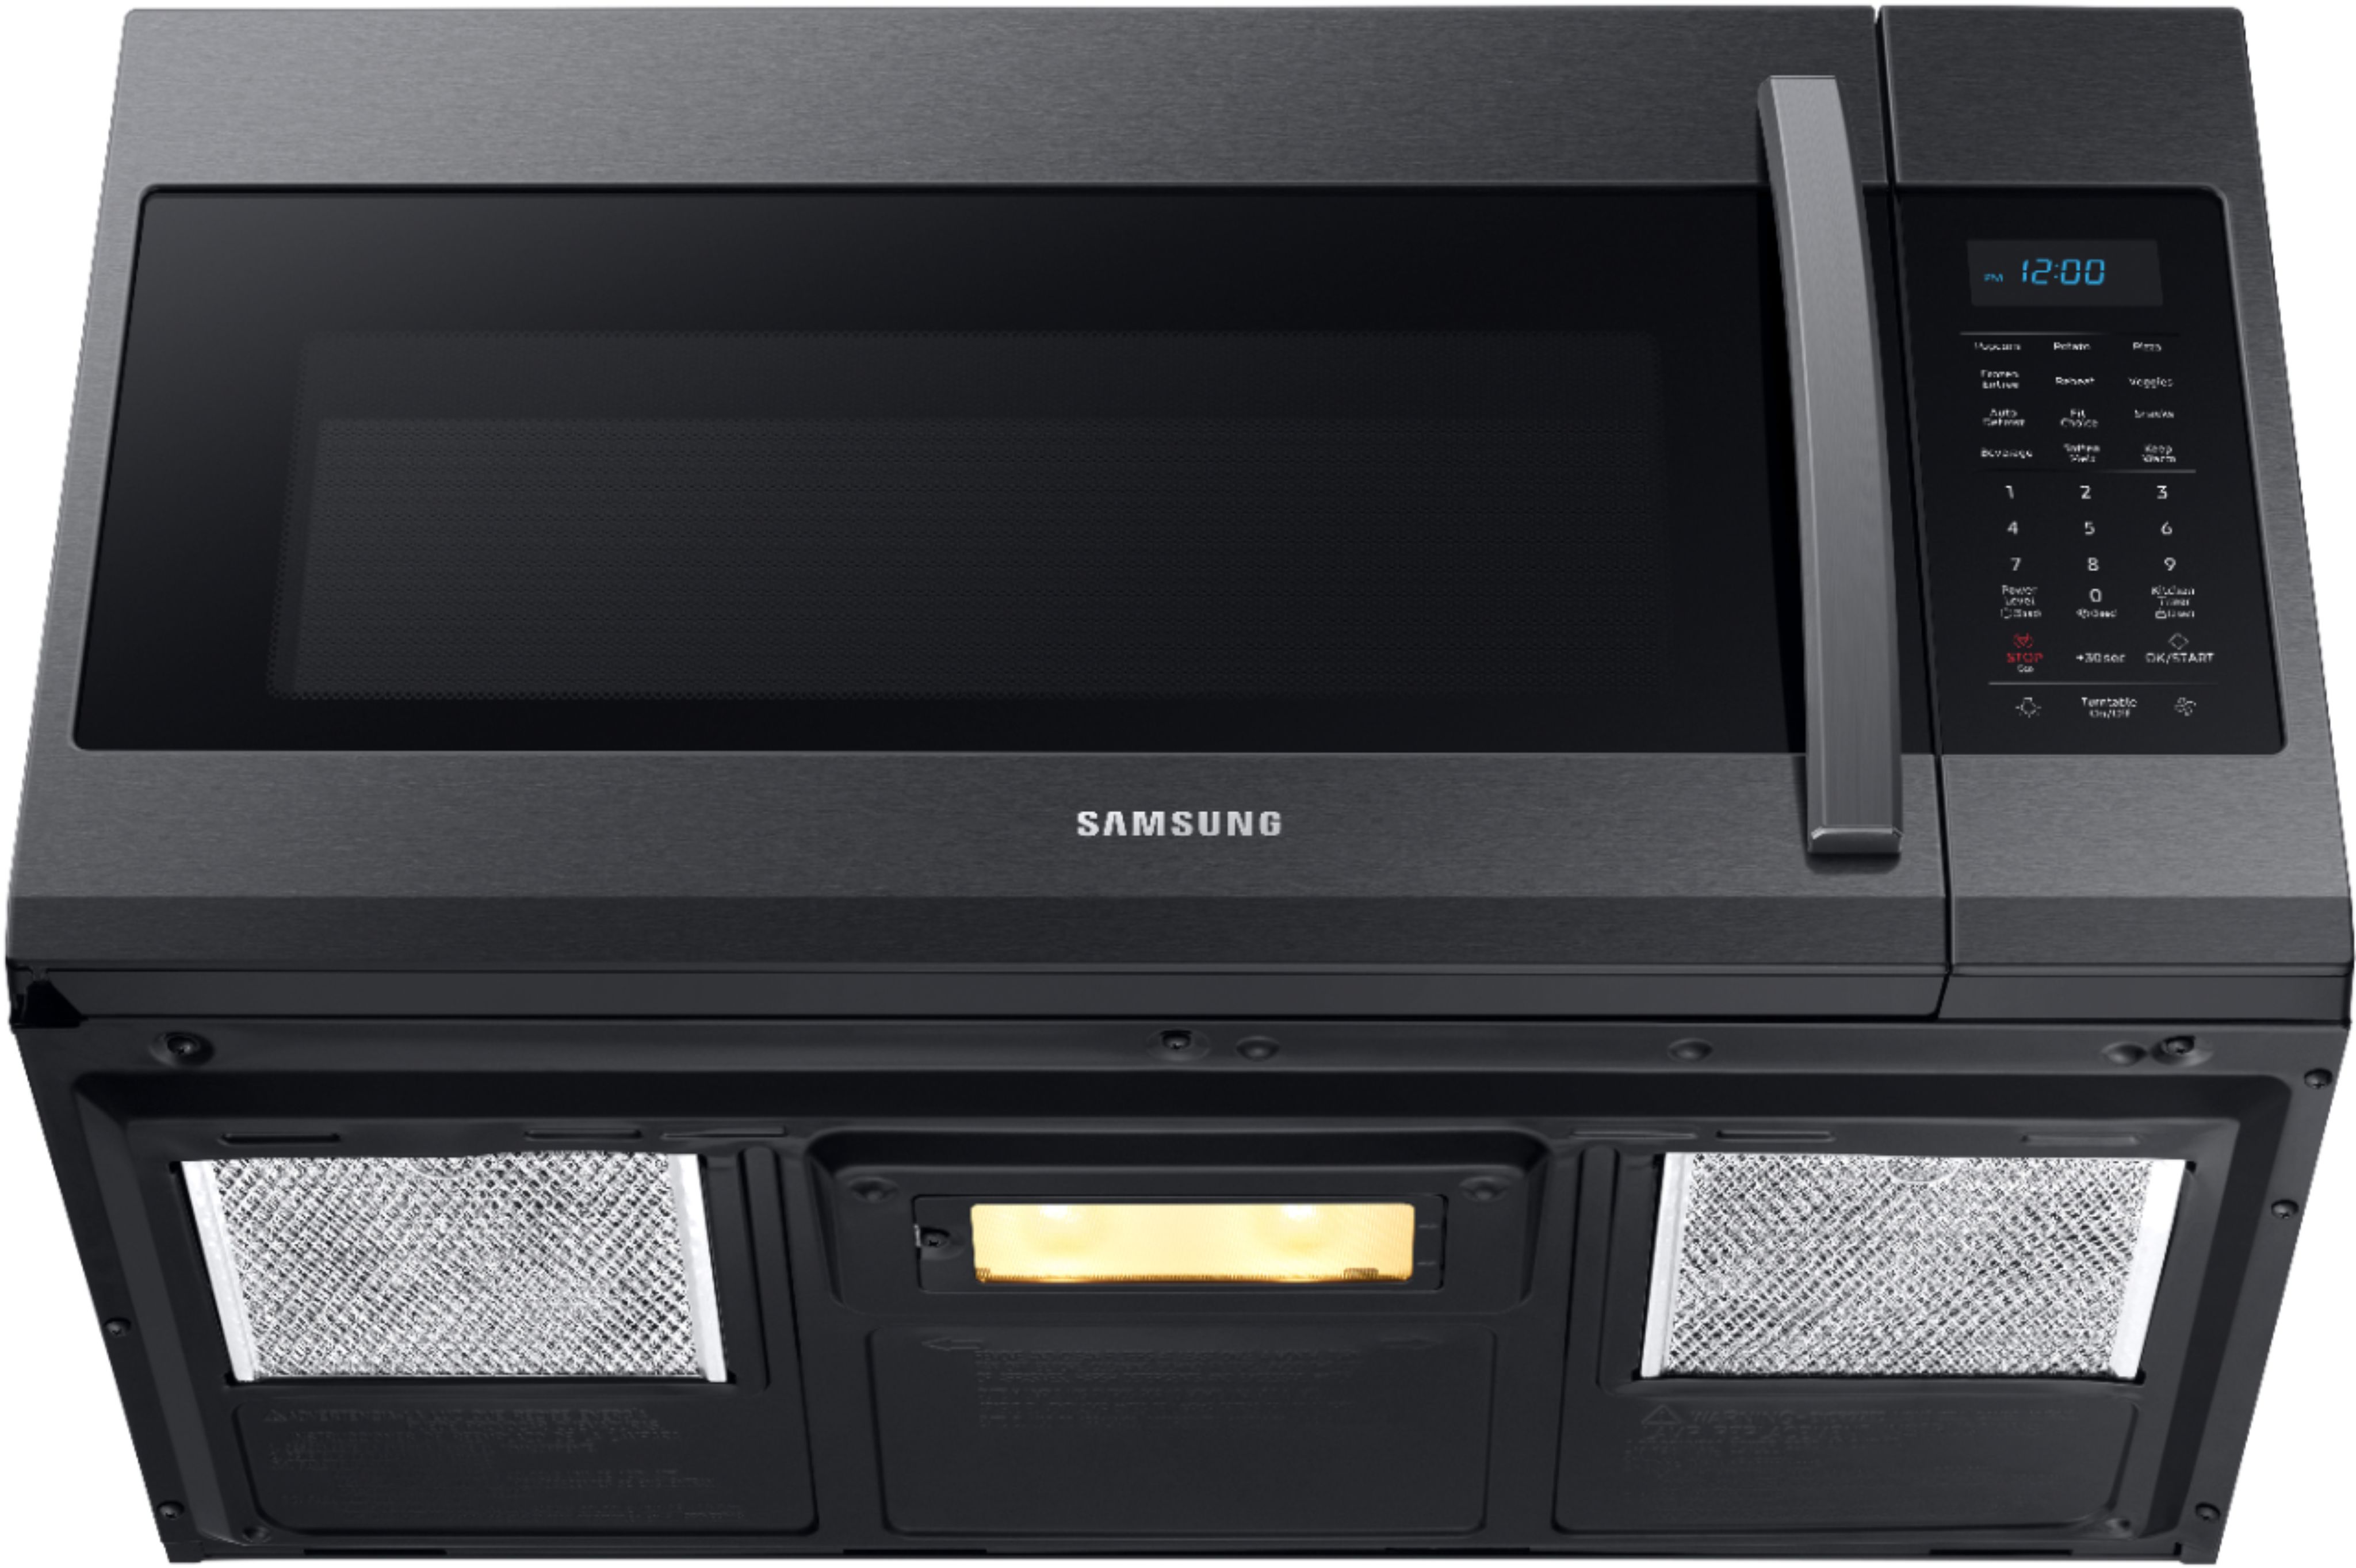 Samsung - 1.9 Cu. Ft. Over-the-Range Fingerprint Resistant Microwave